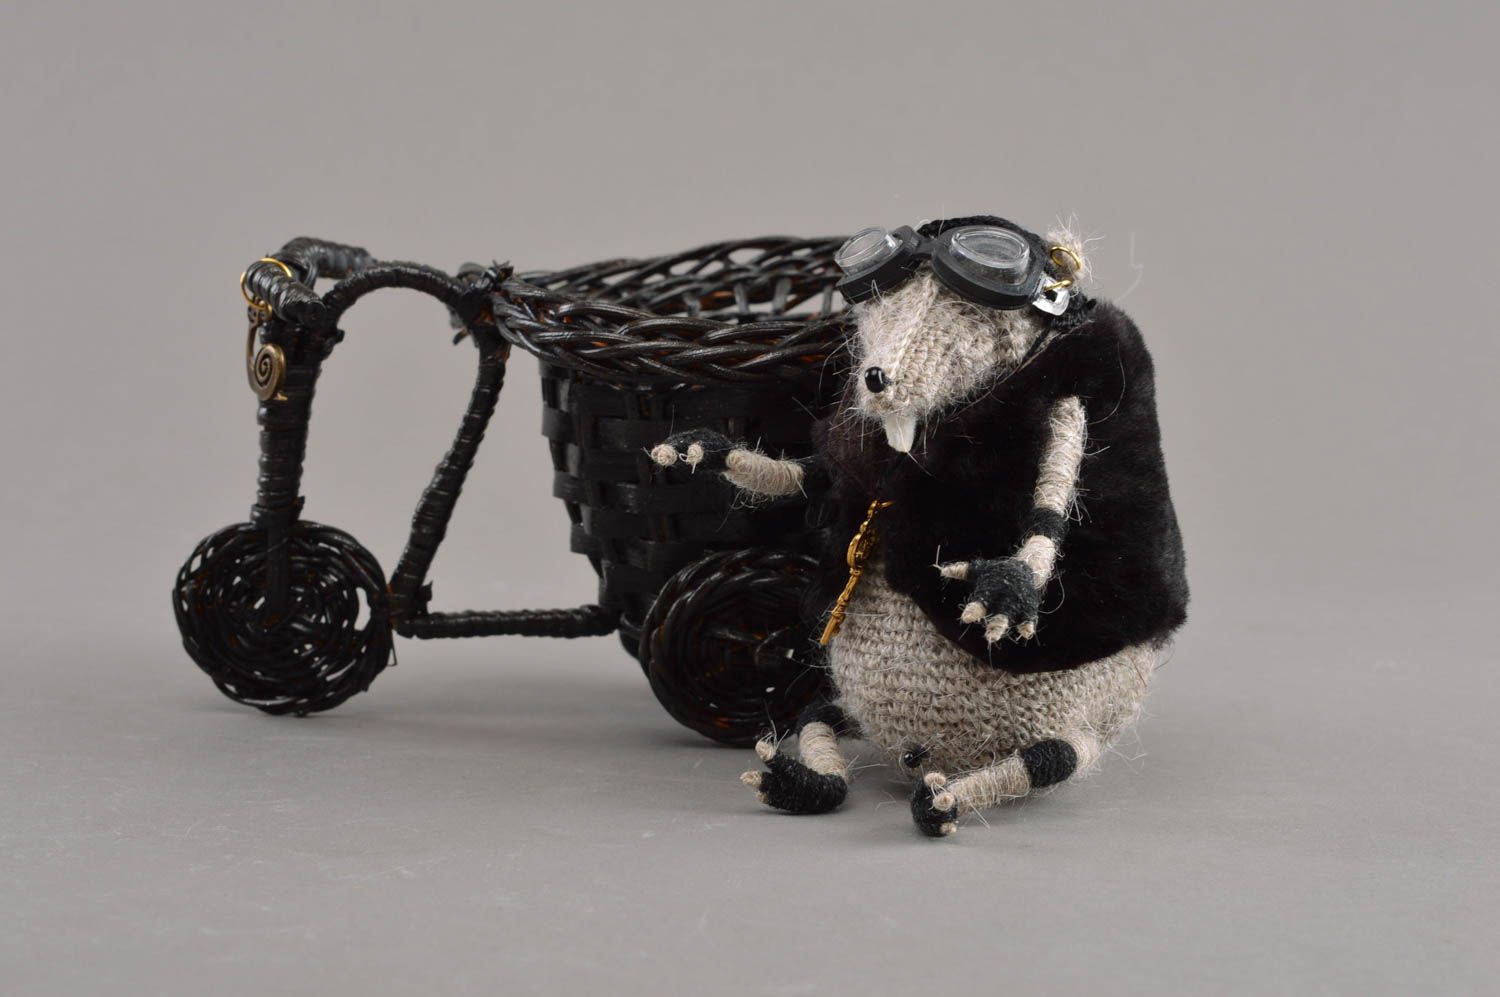 Мягкая вязаная игрушка скульптура крыса байкер на мотоцикле ручная работа фото 3